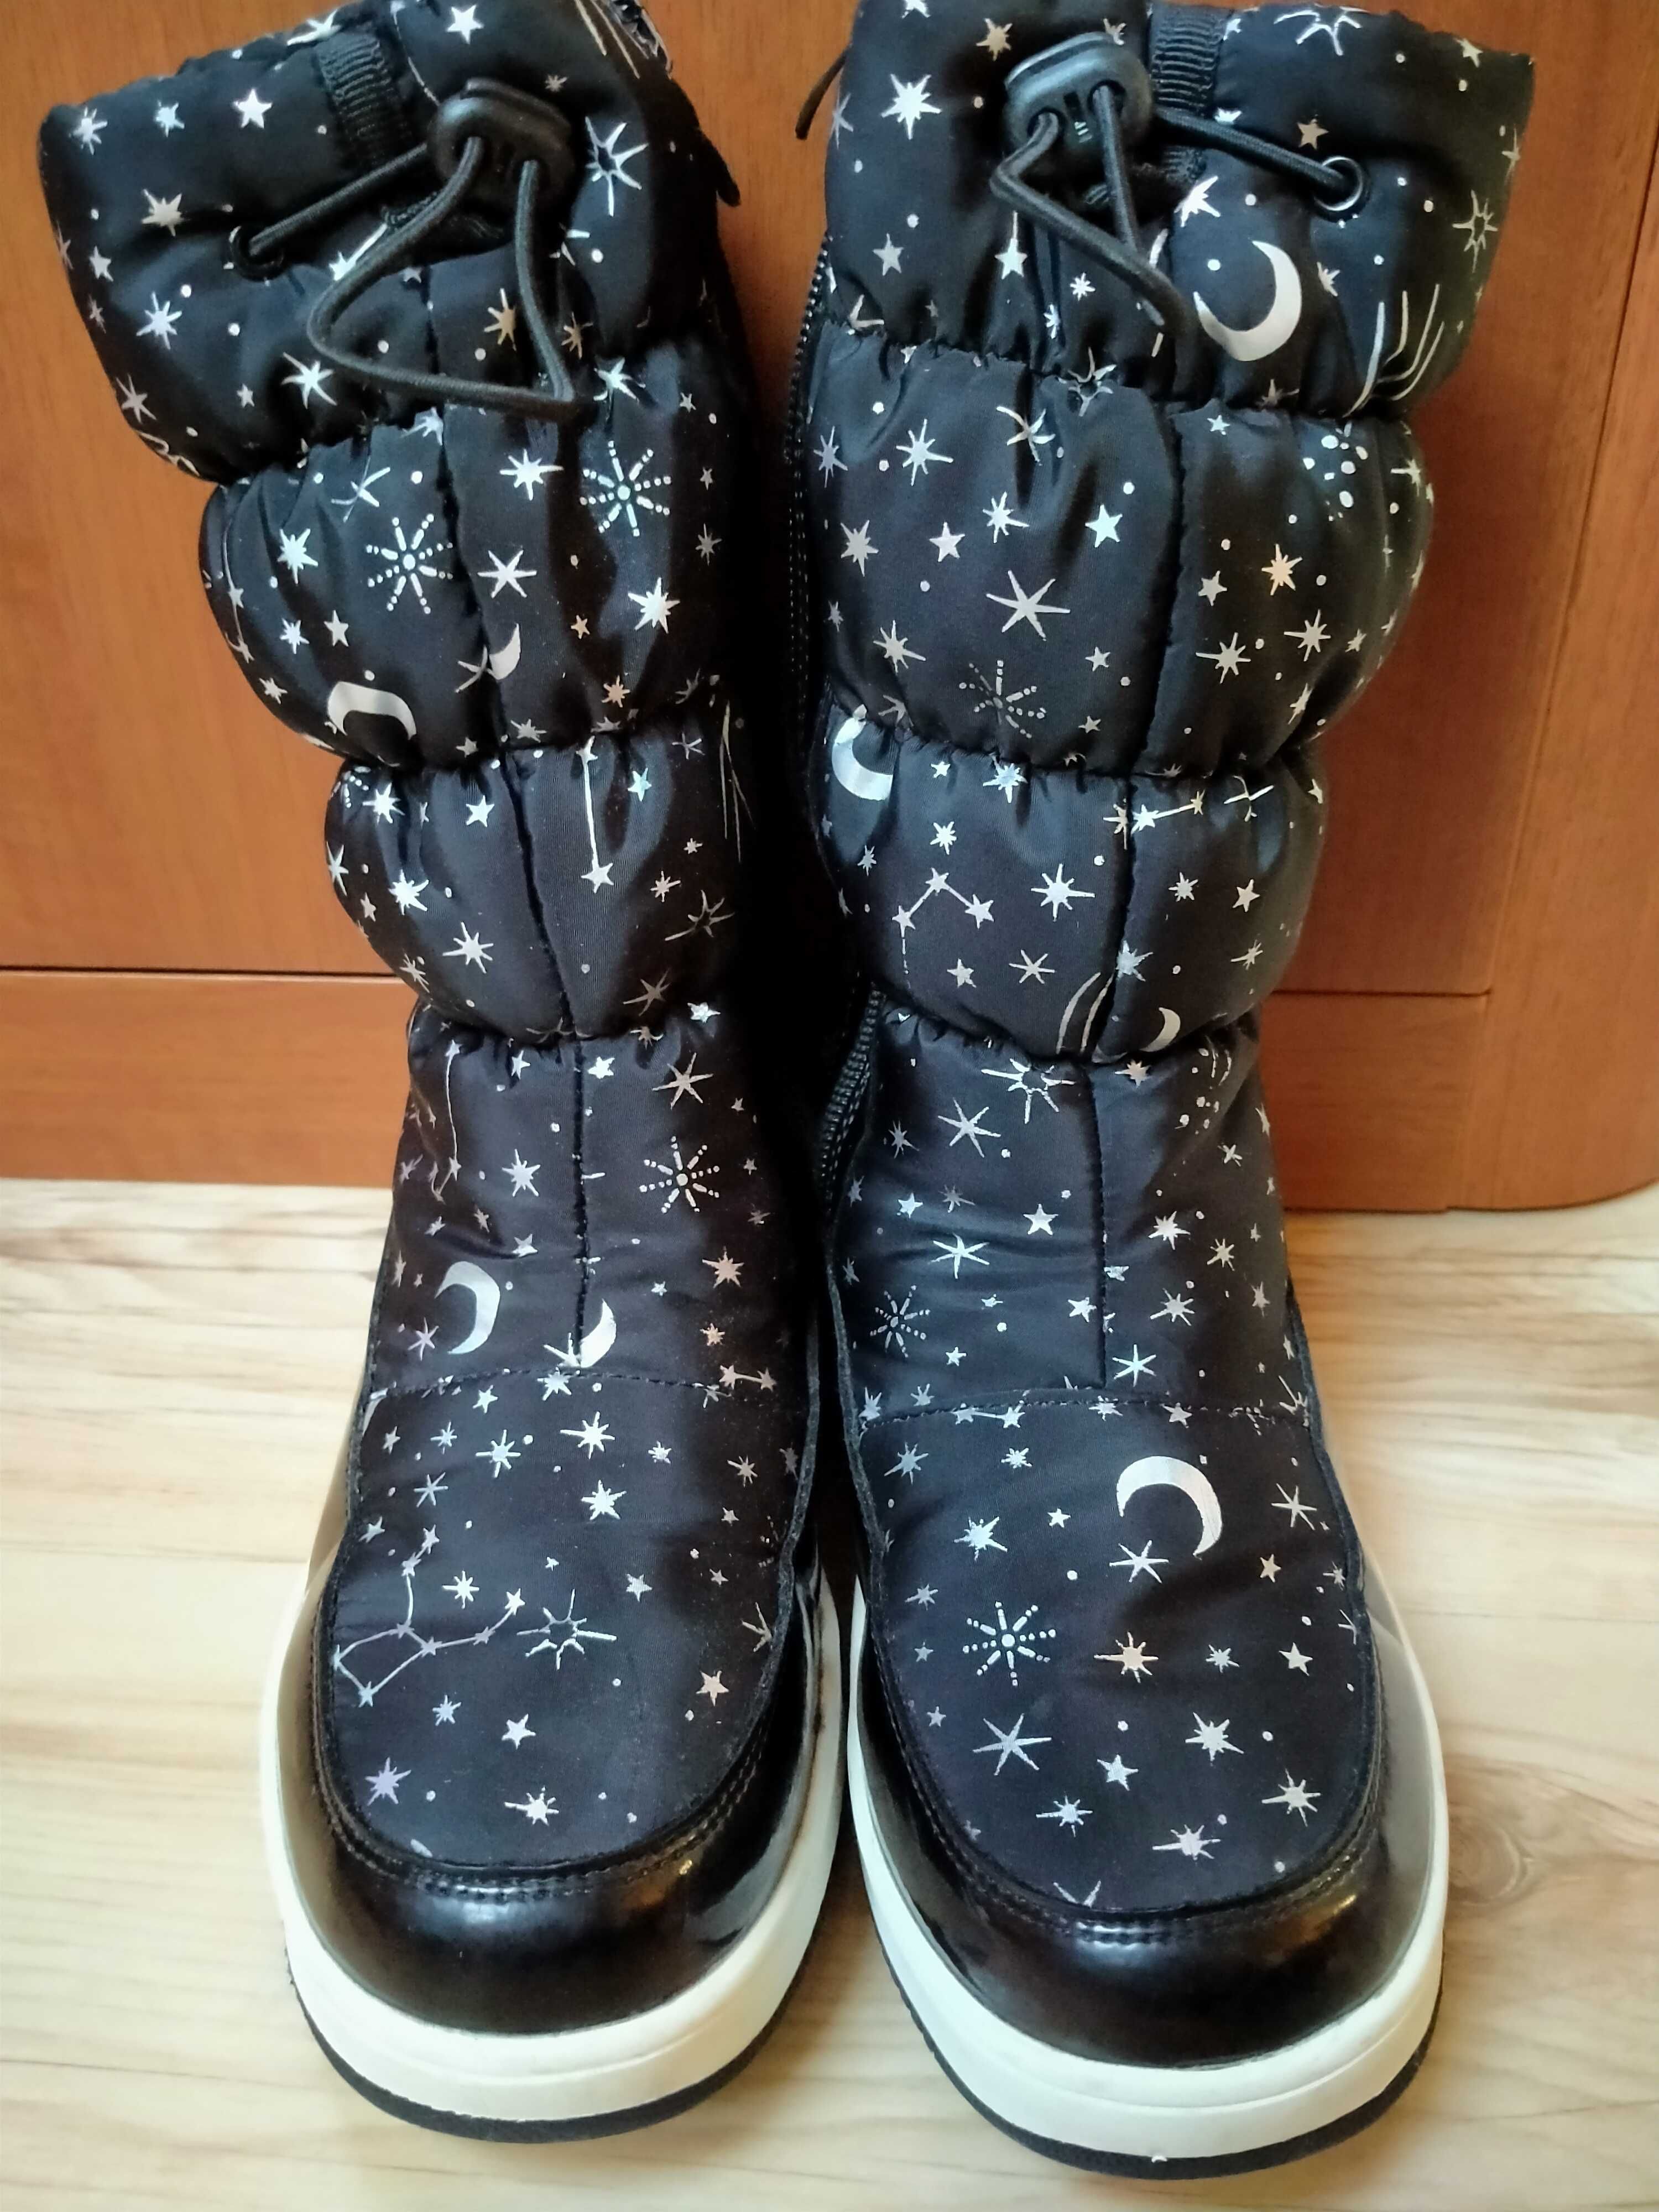 buty zimowe ocieplane 32 SMYK (czarne w gwiazdozbiory)